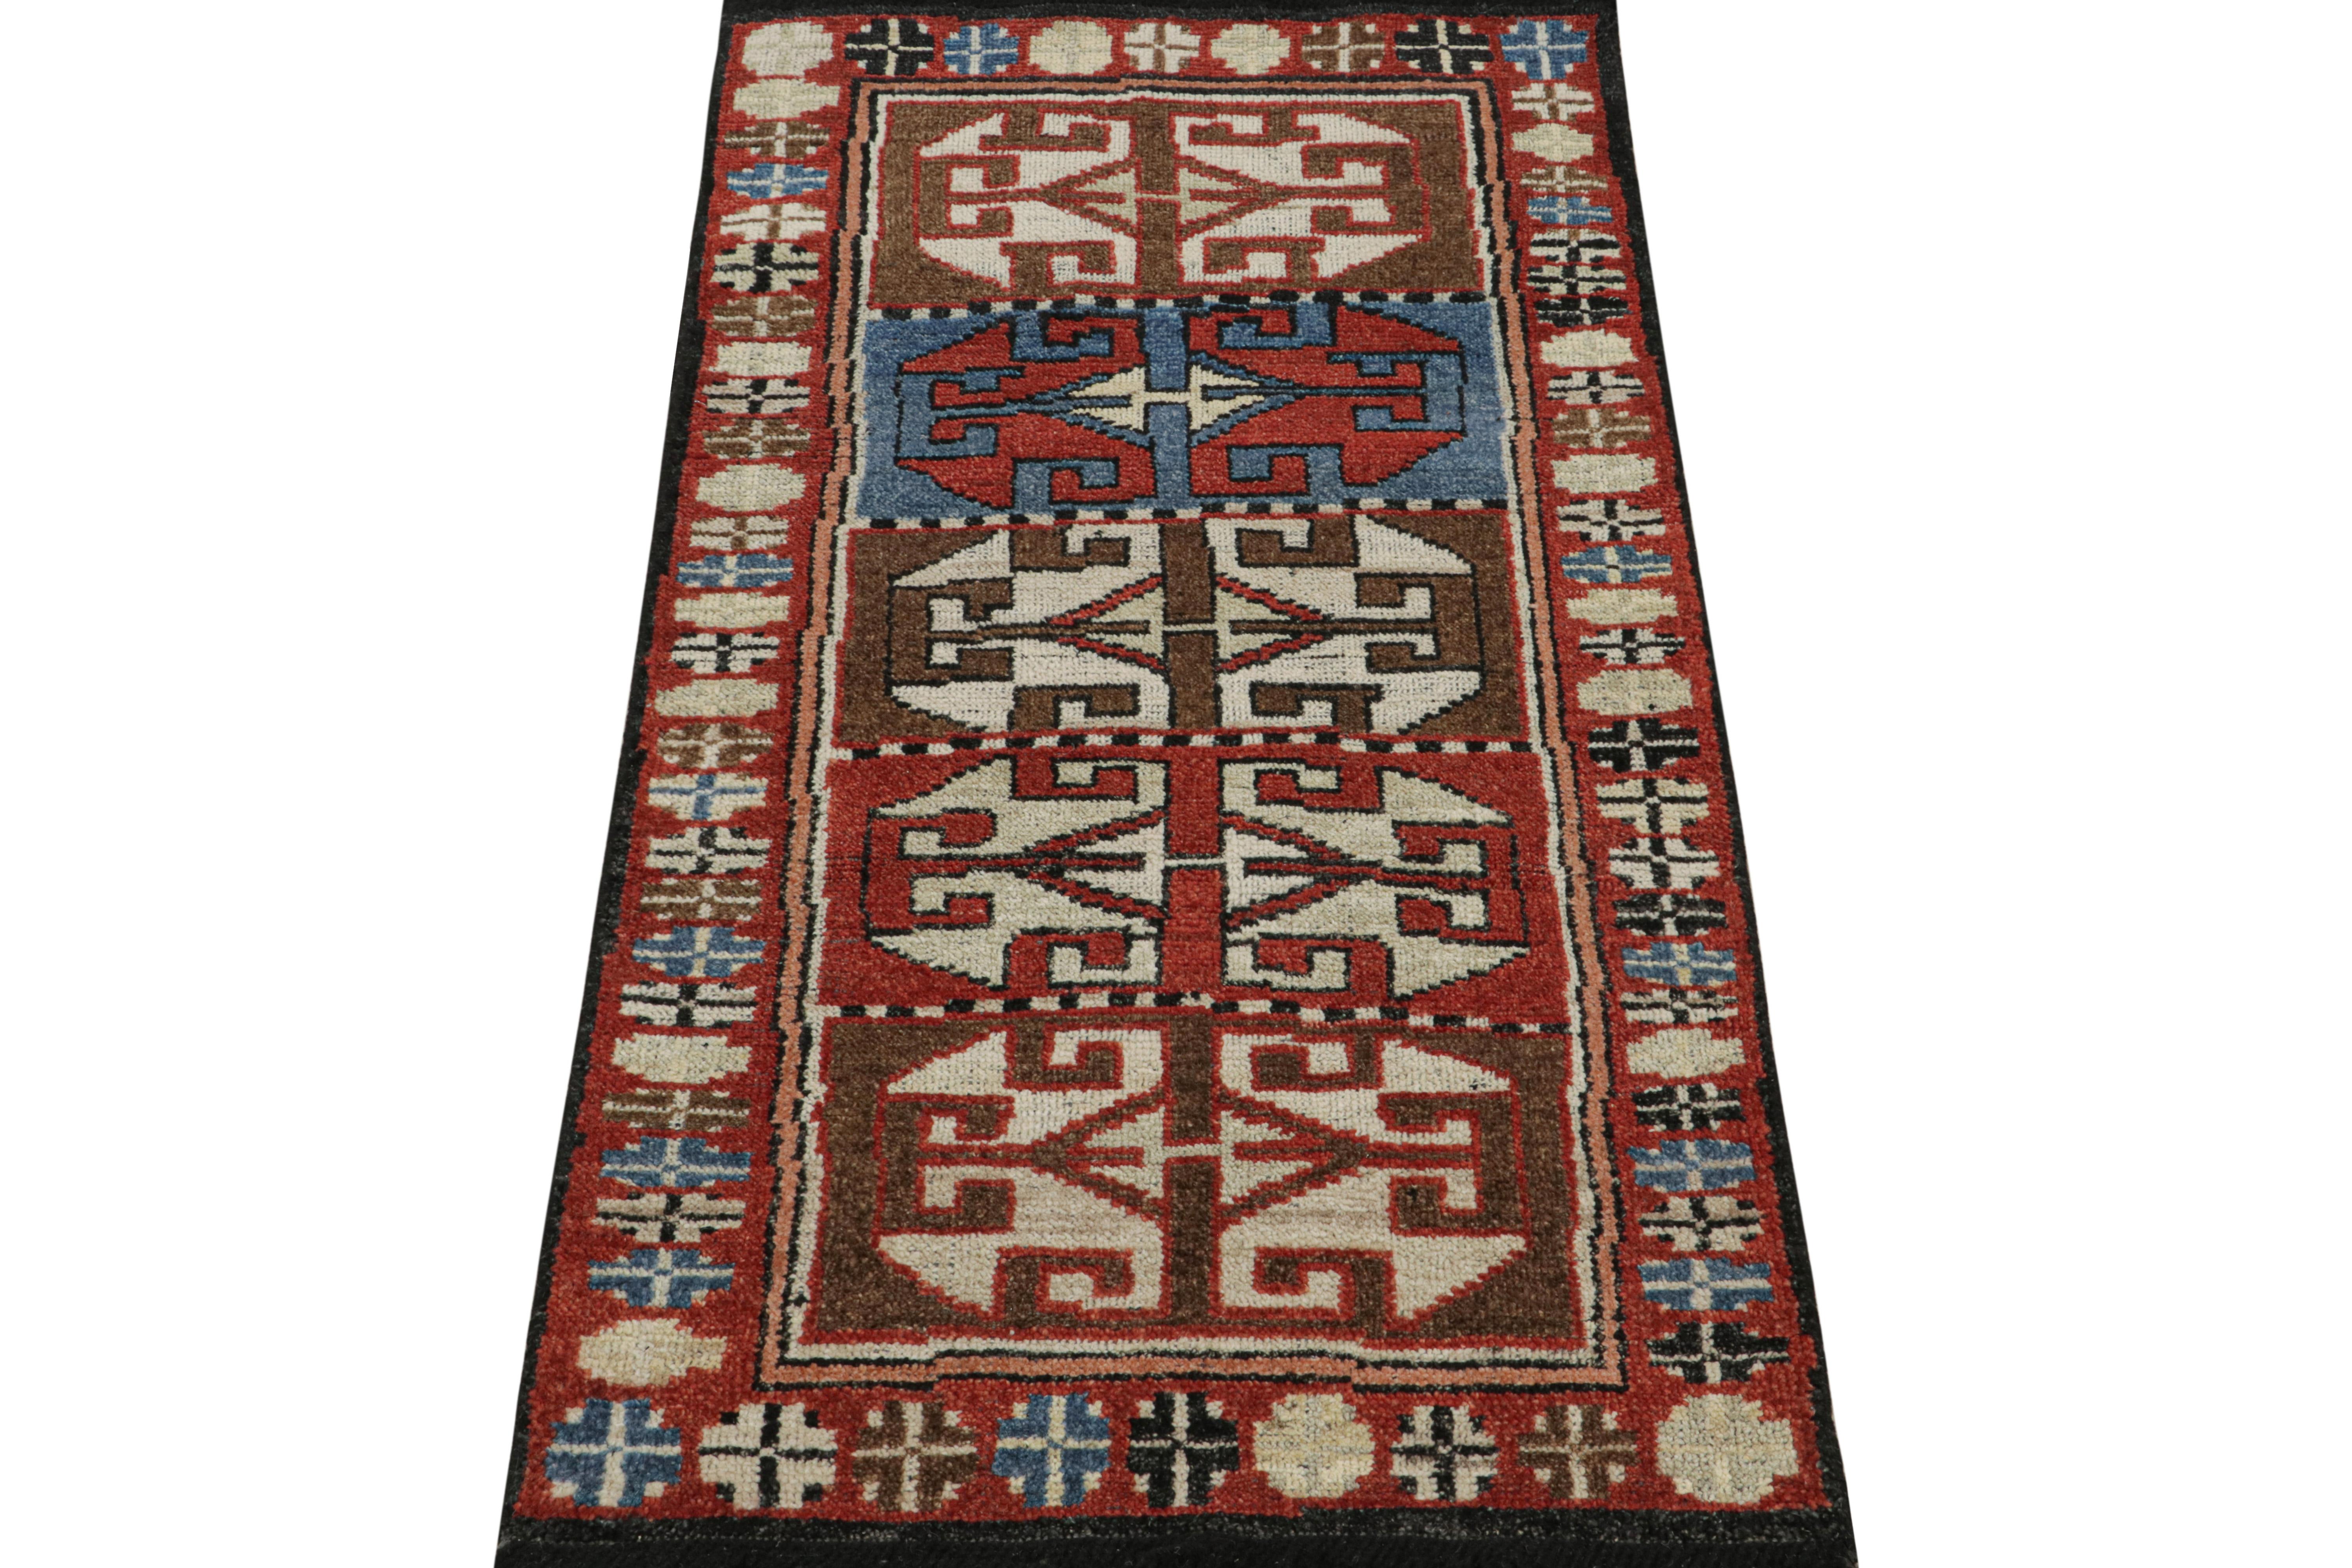 Indien Rug & Kilim's Antique Tribal Style rug in Red, Blue & Brown Patterns (tapis ancien de style tribal à motifs rouges, bleus et bruns) en vente